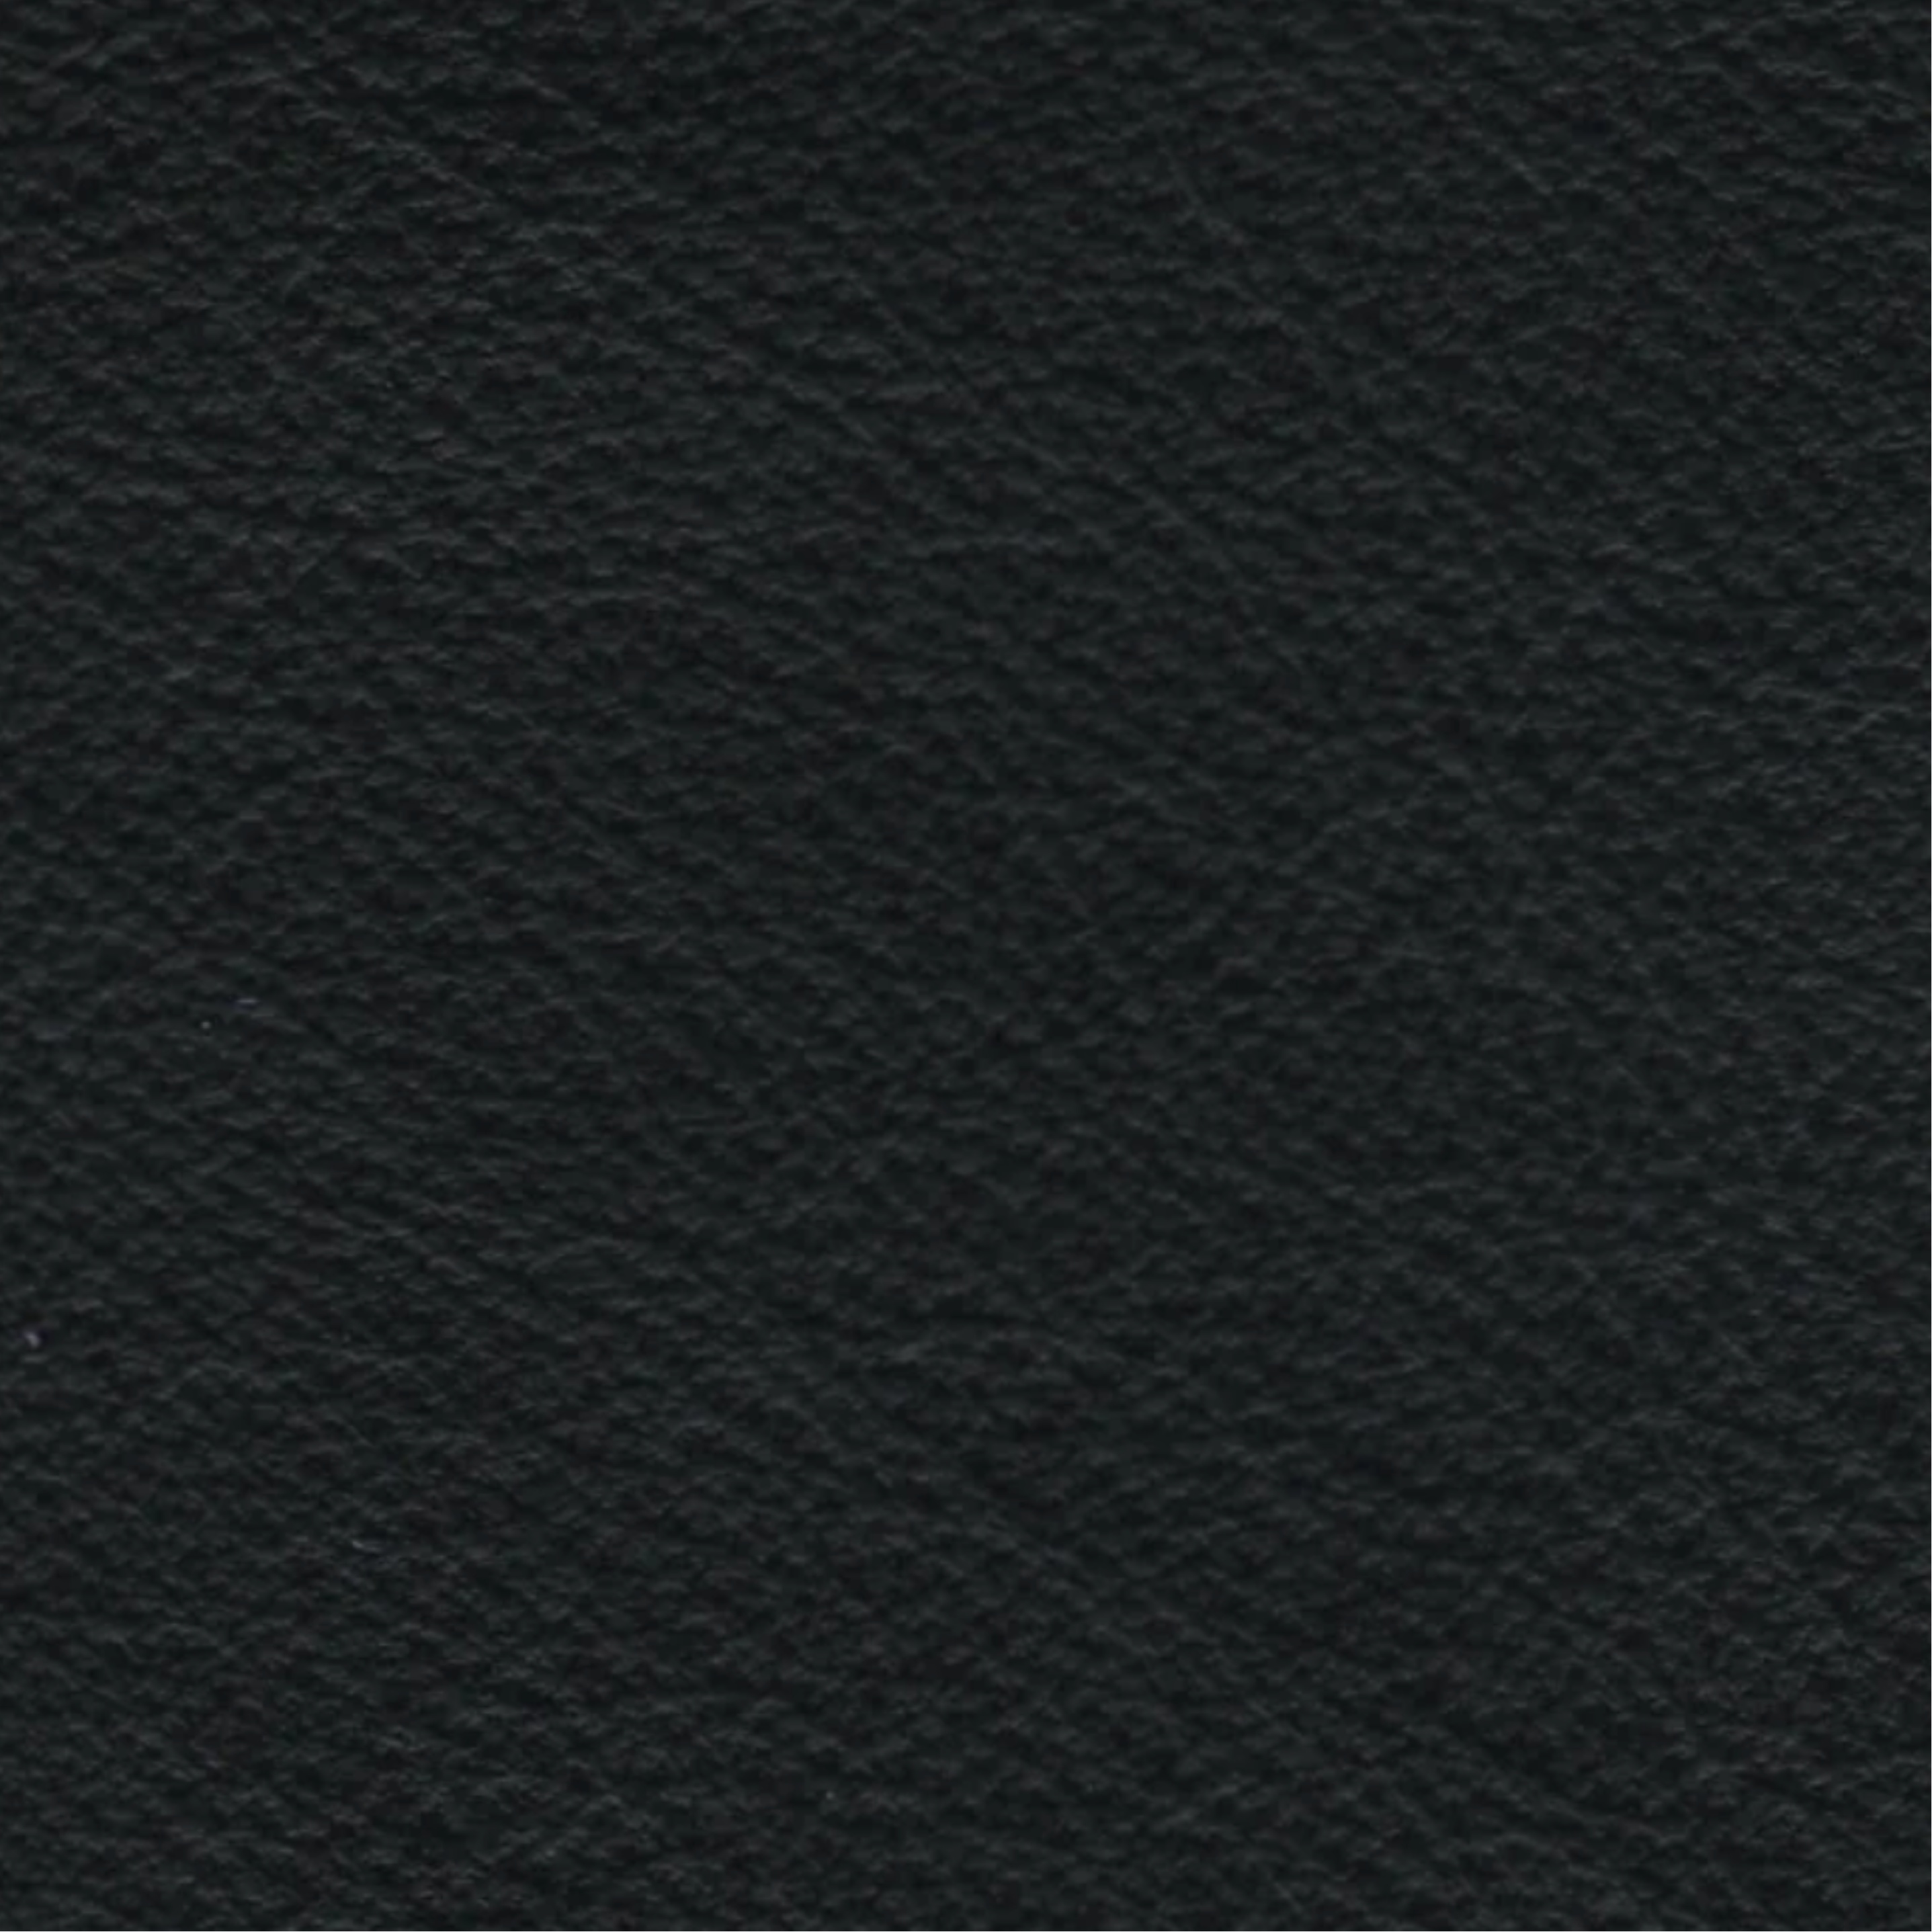 Futura Leather - Lena, colour Black